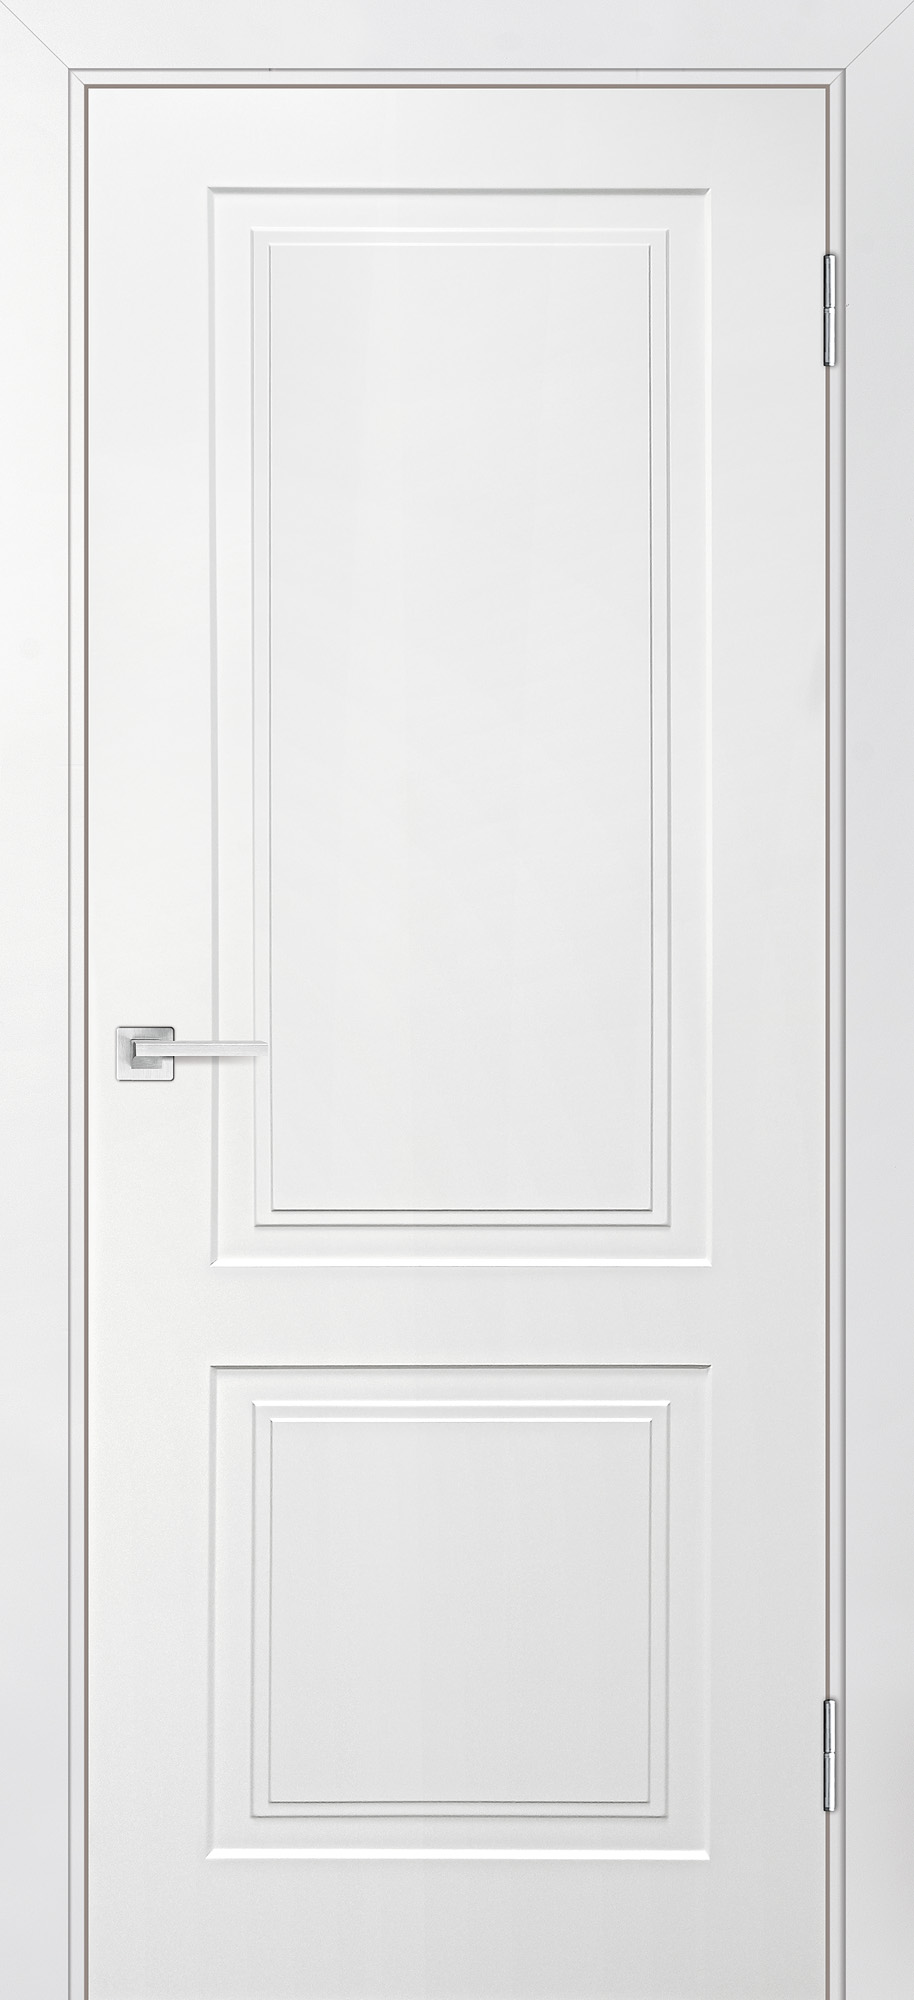 Двери крашеные (Эмаль) ТЕКОНА Смальта-Лайн 04 глухое Белый ral 9003 размер 190 х 60 см. артикул F0000083710